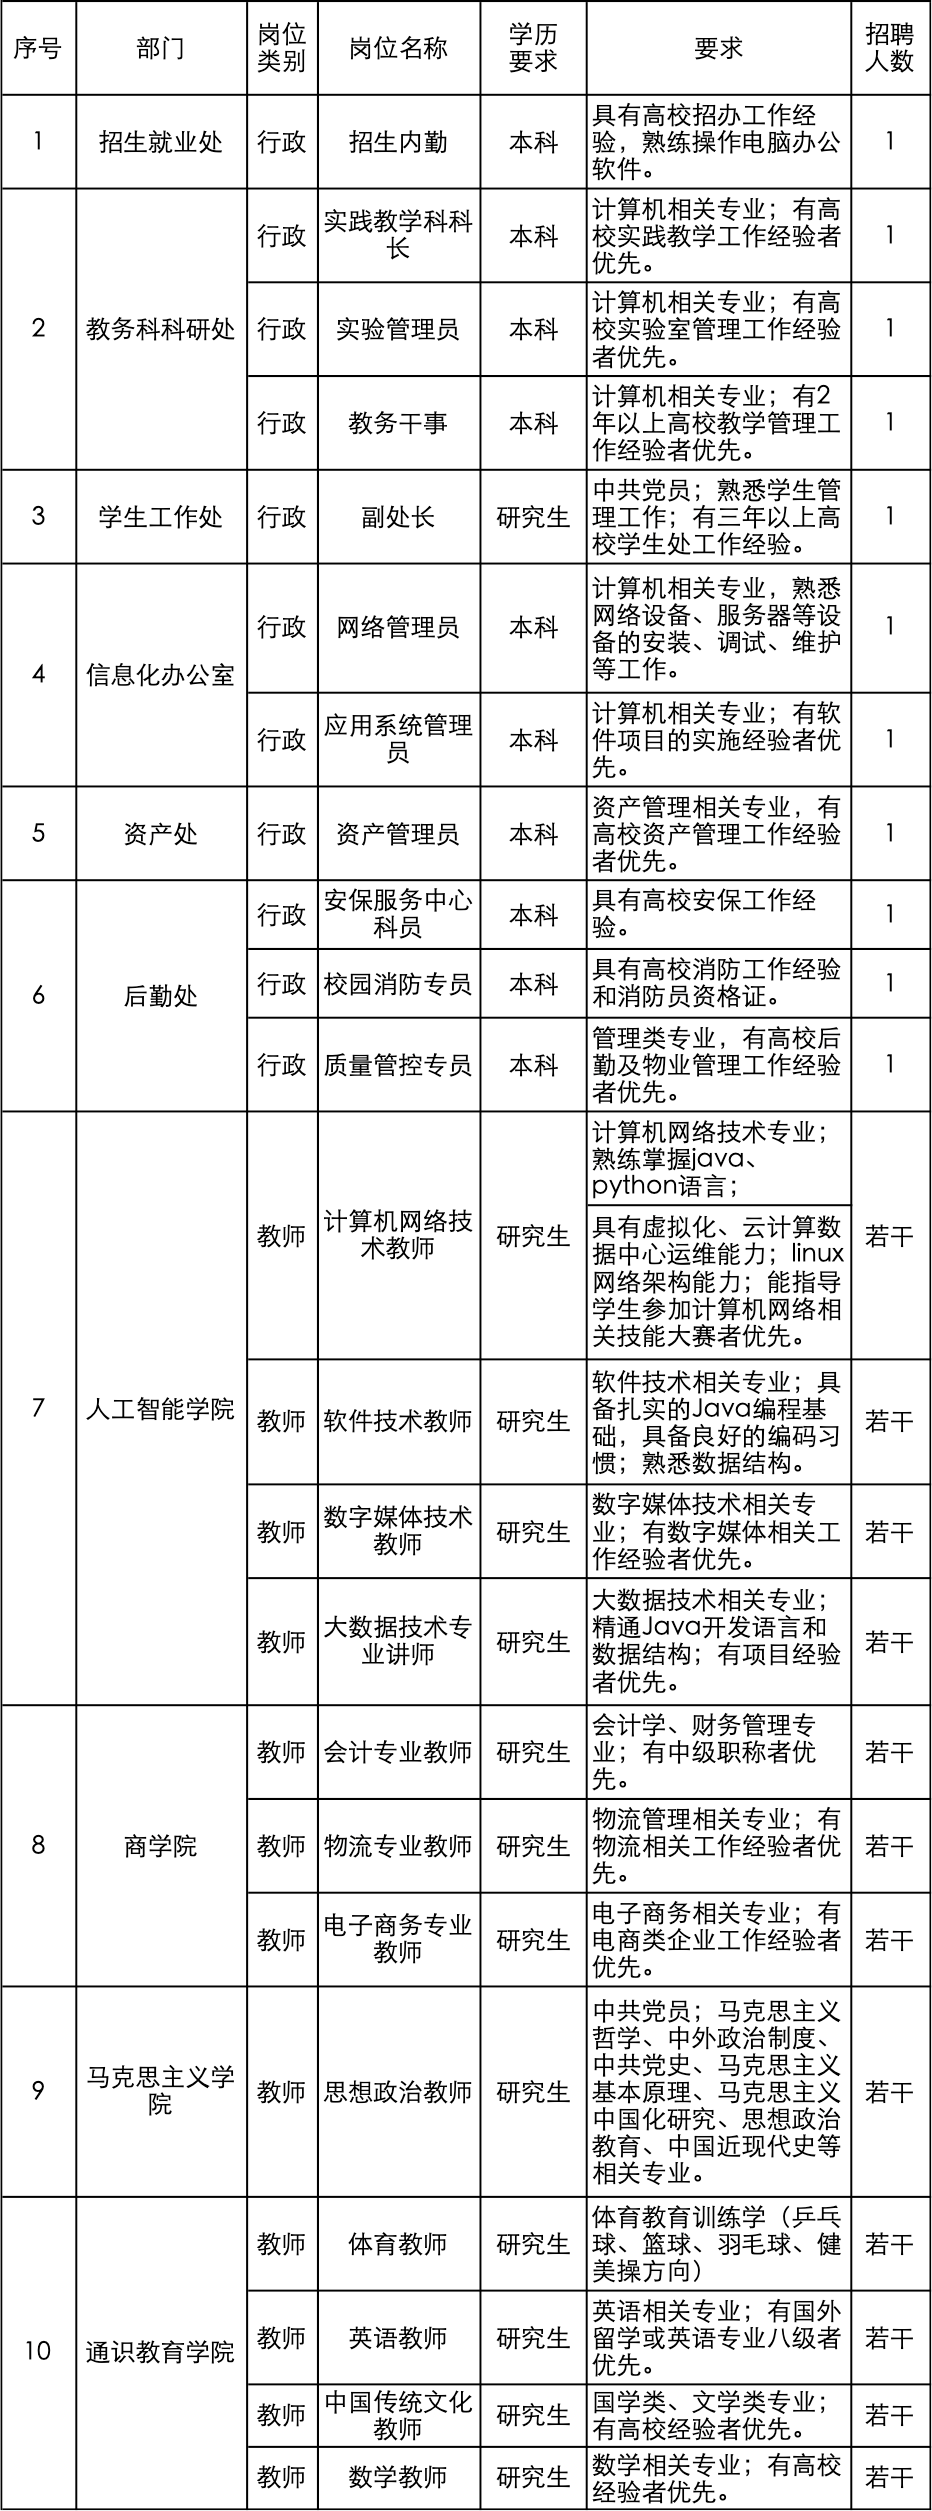 
                        郑州智能科技职业学院公开招聘行政、教师岗